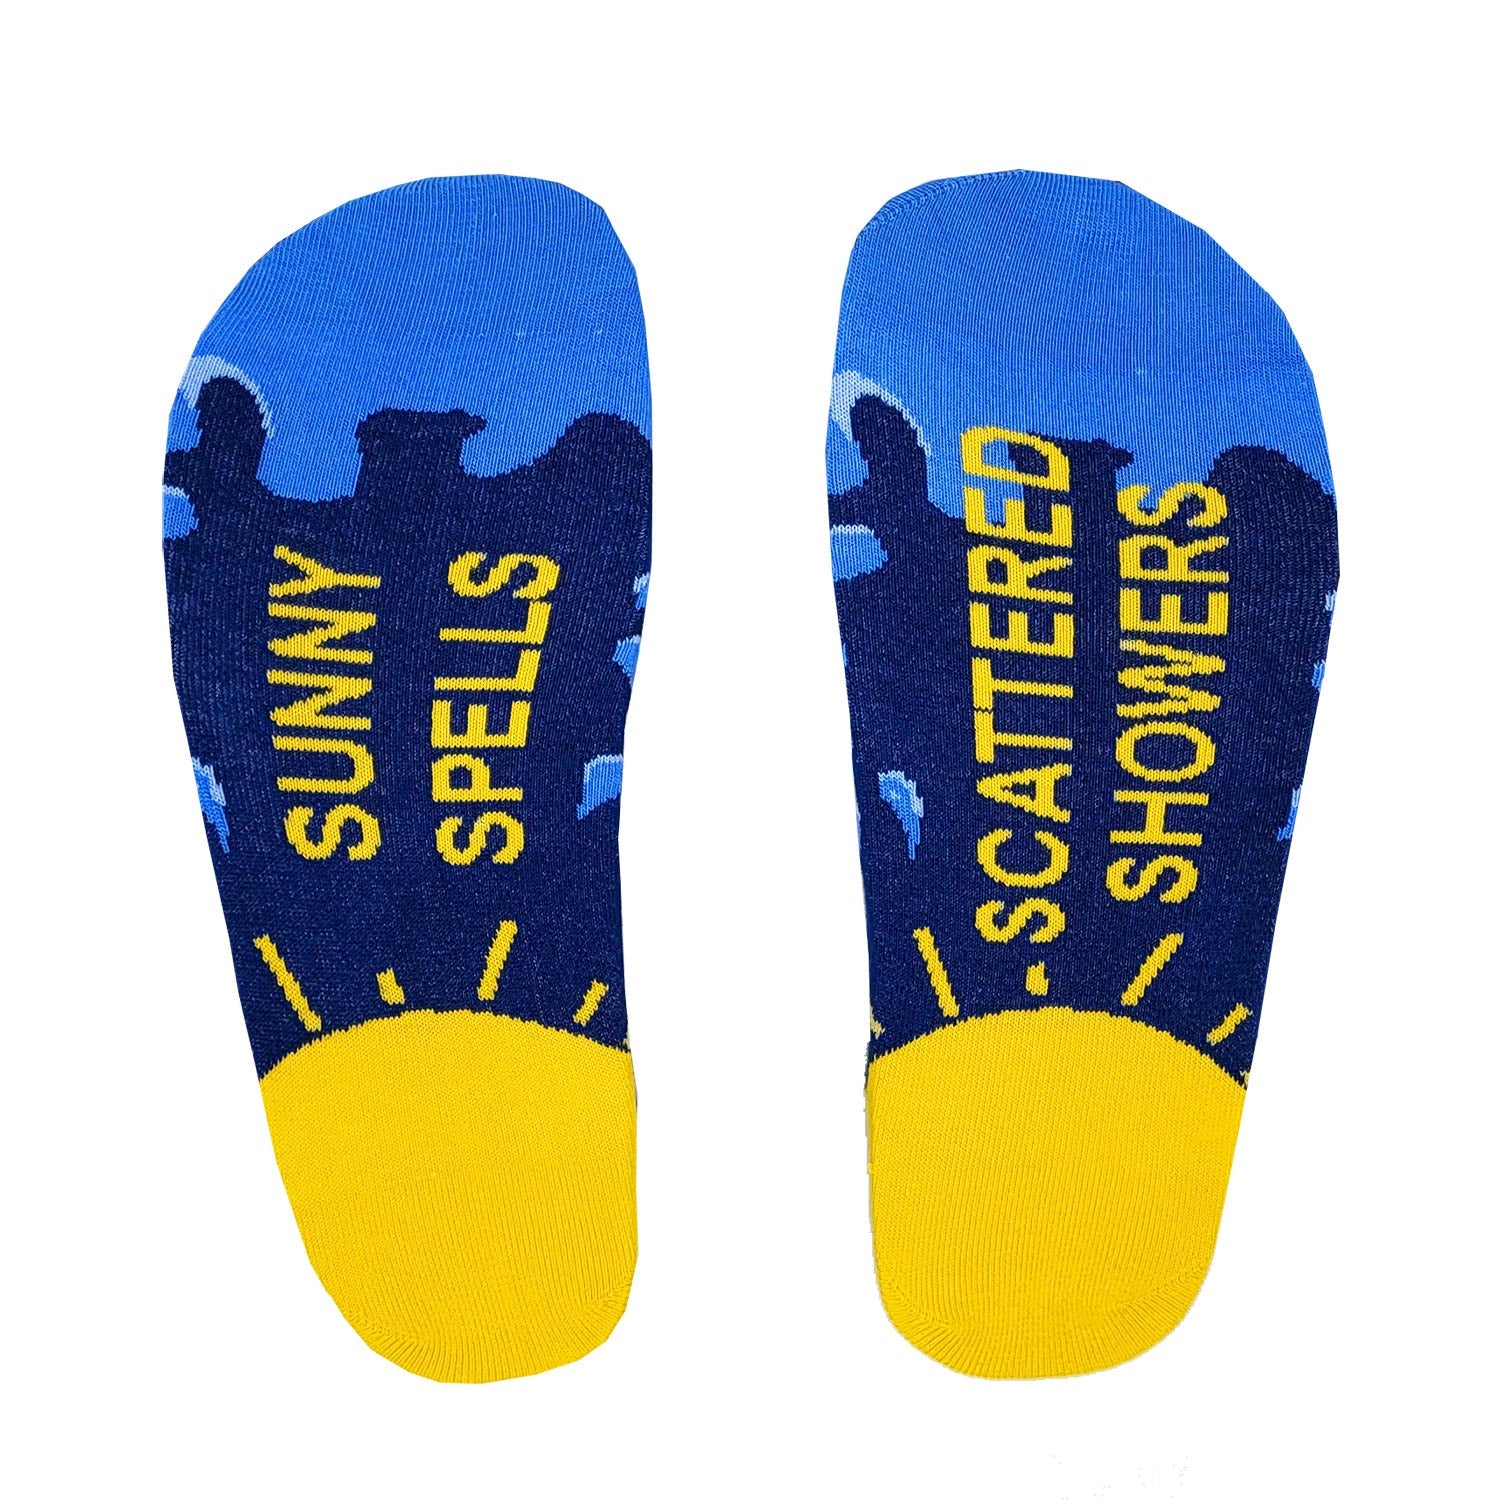 Sunny Spells Socks